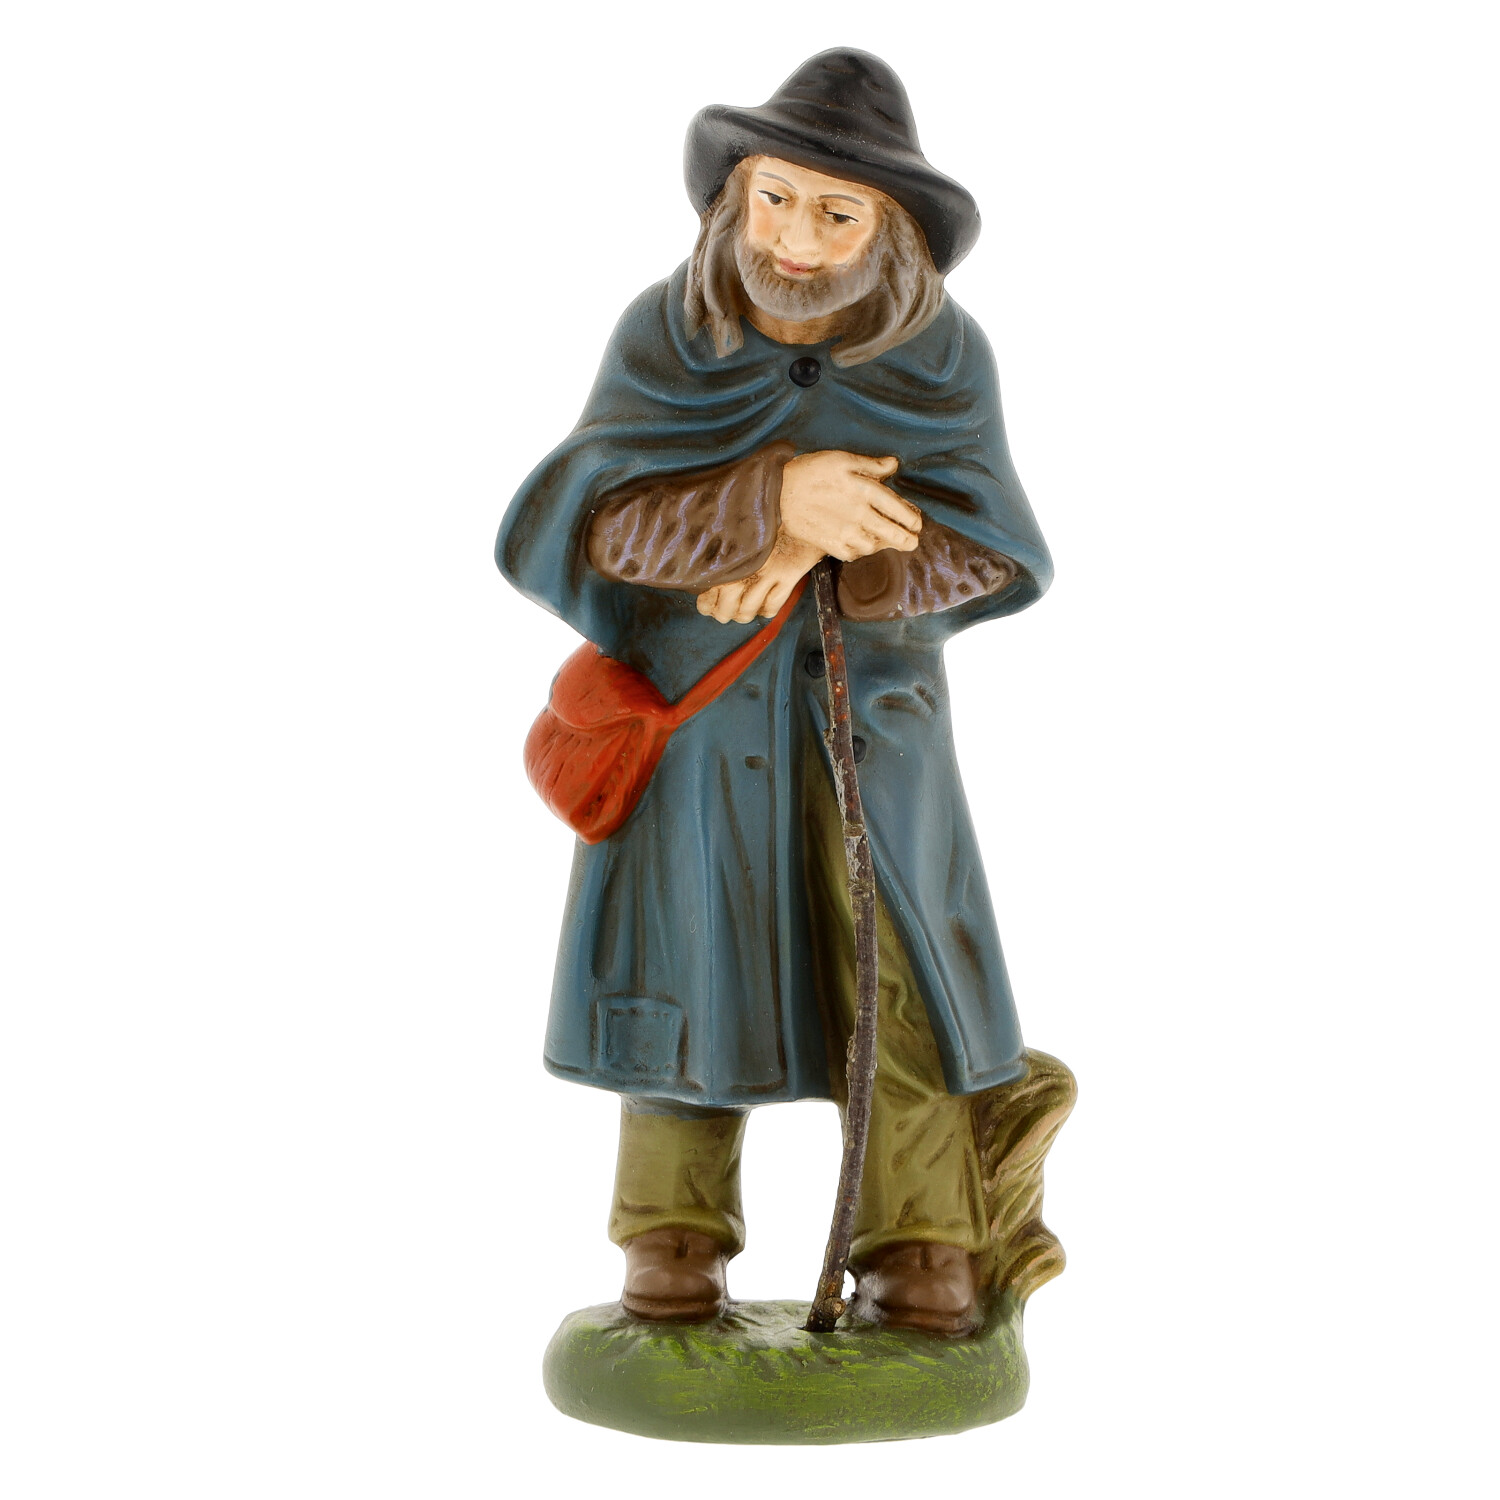 Shepherd - Marolin Nativity figure - made in Germany